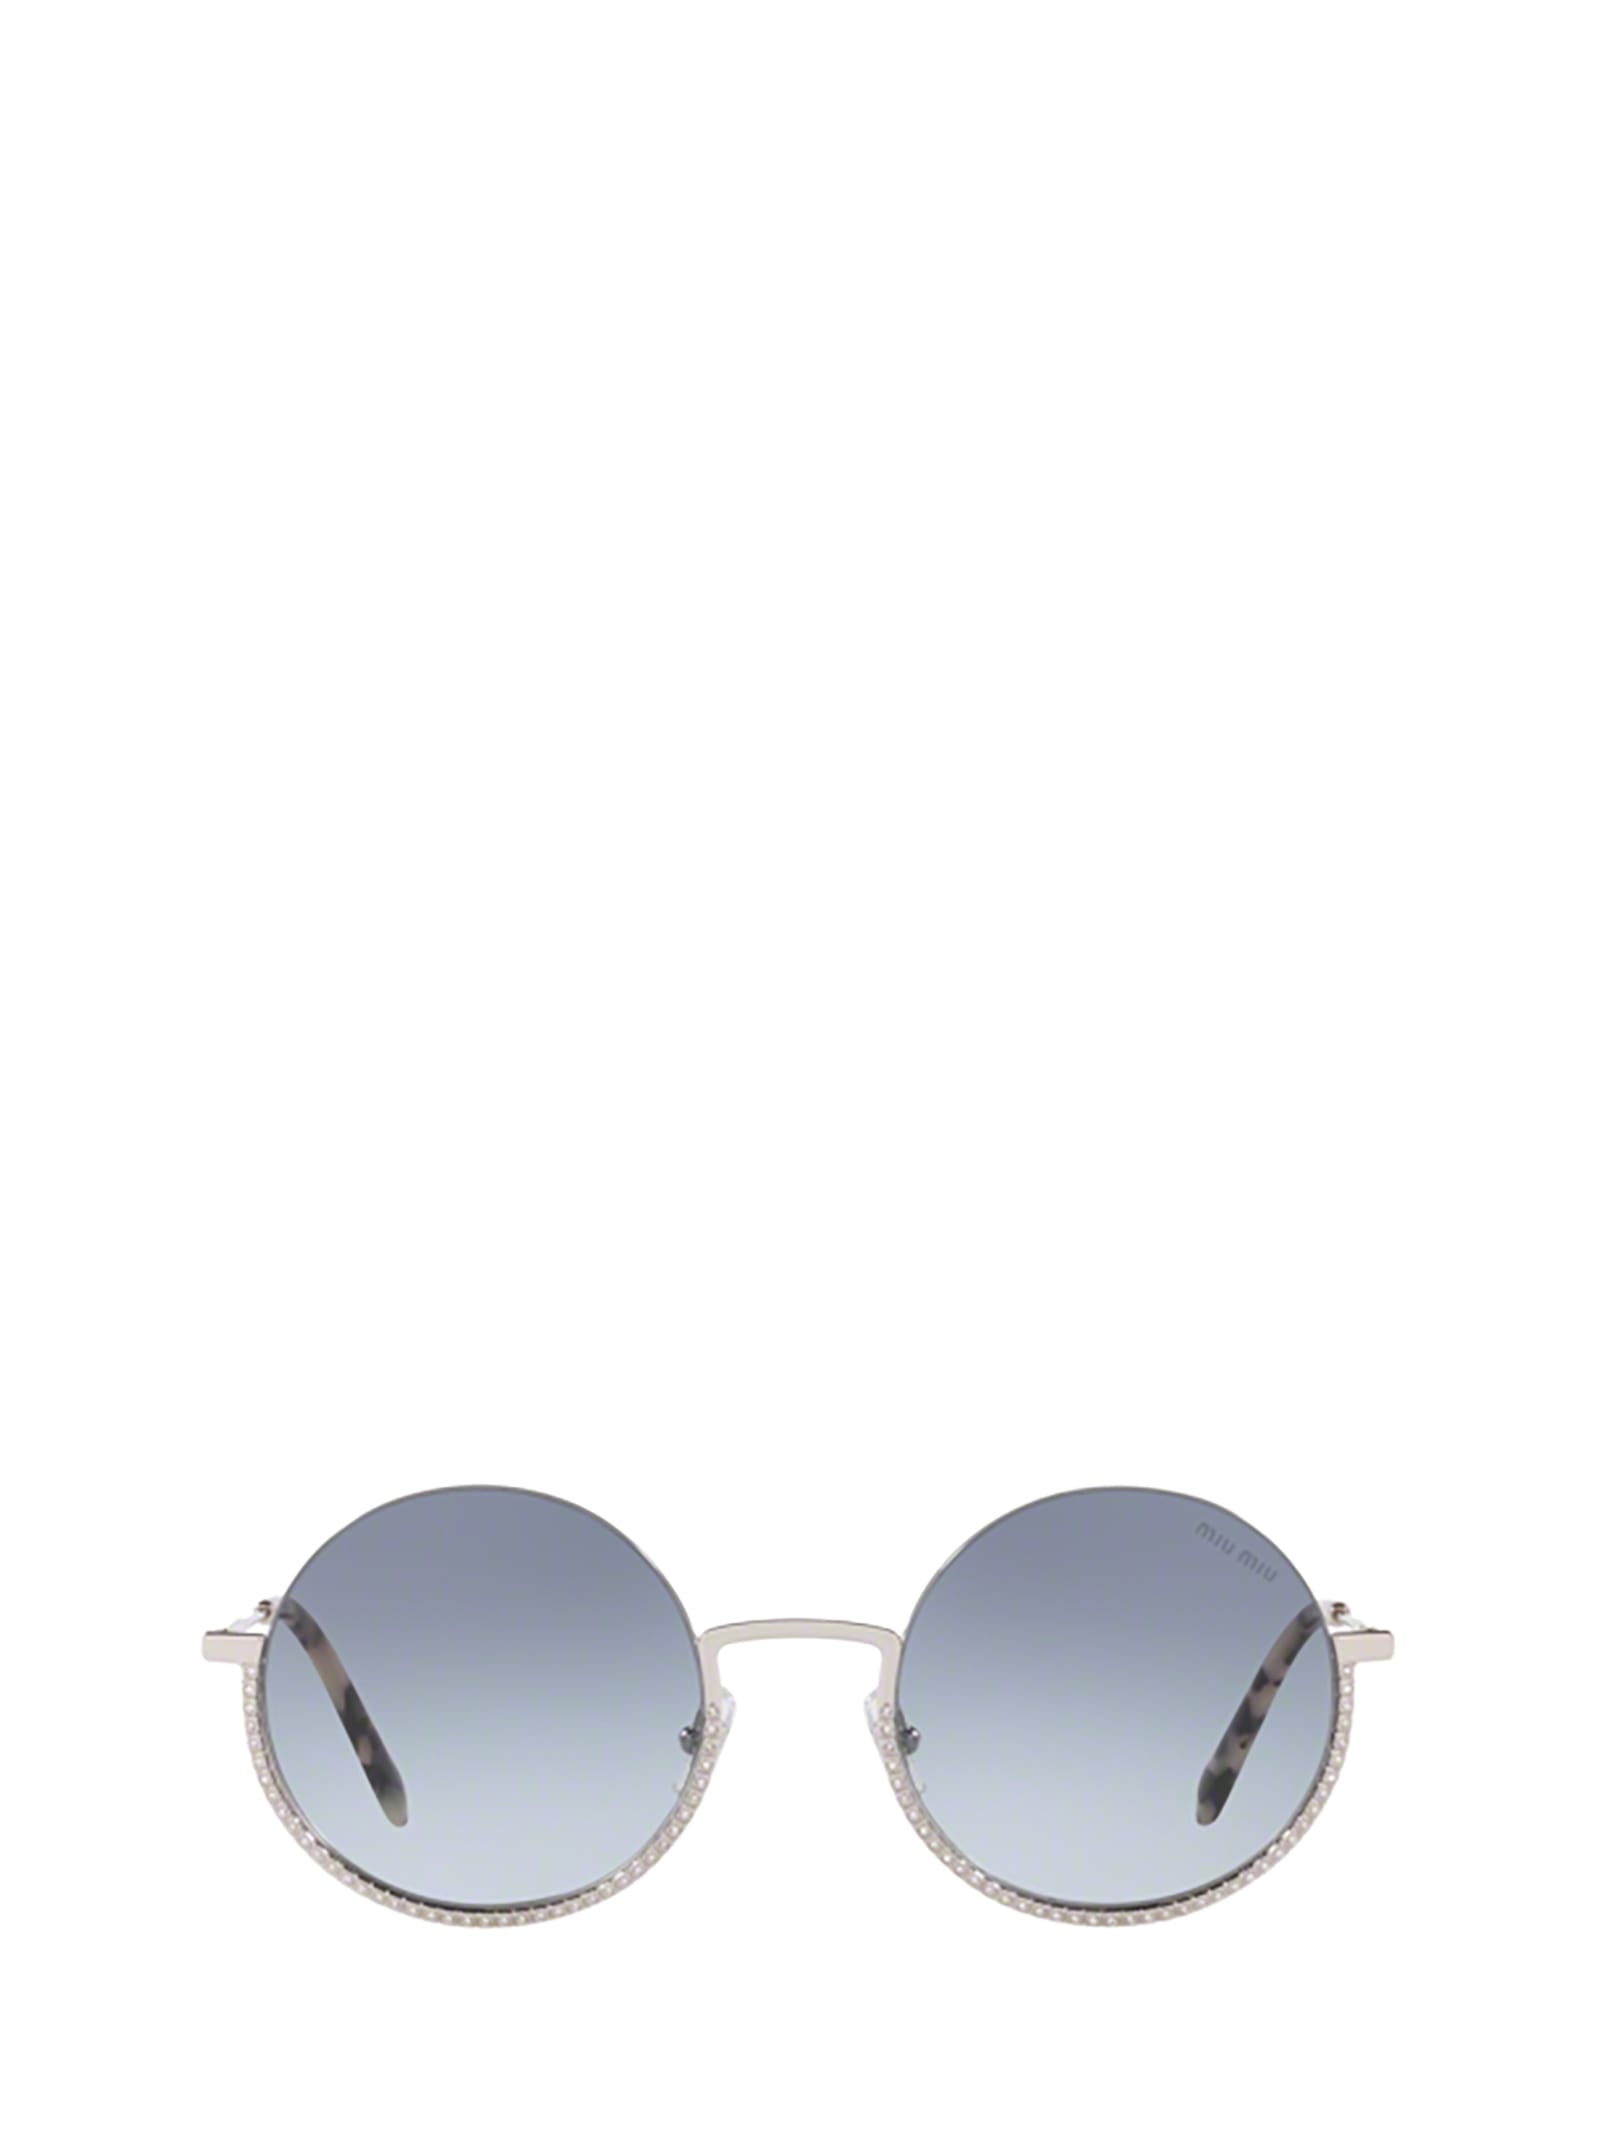 Miu Miu Eyewear Miu Miu Mu 69us Silver Sunglasses